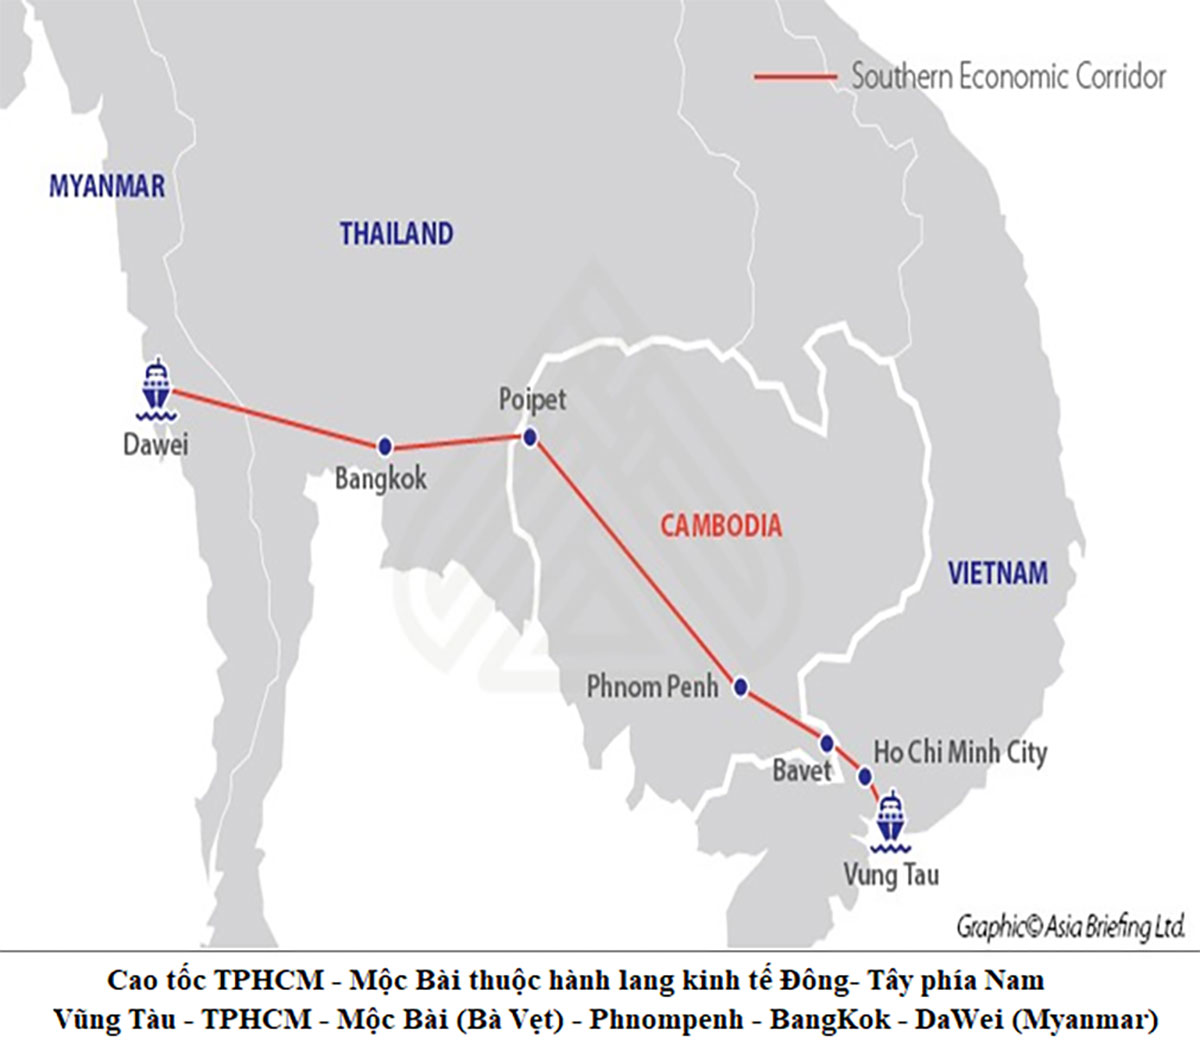 Cao tốc TP.HCM - Mộc Bài là tuyến cao tốc thuộc hành lang kinh tế trọng điểm phía Nam với các nước thuộc tiểu vùng sông Mê Kông